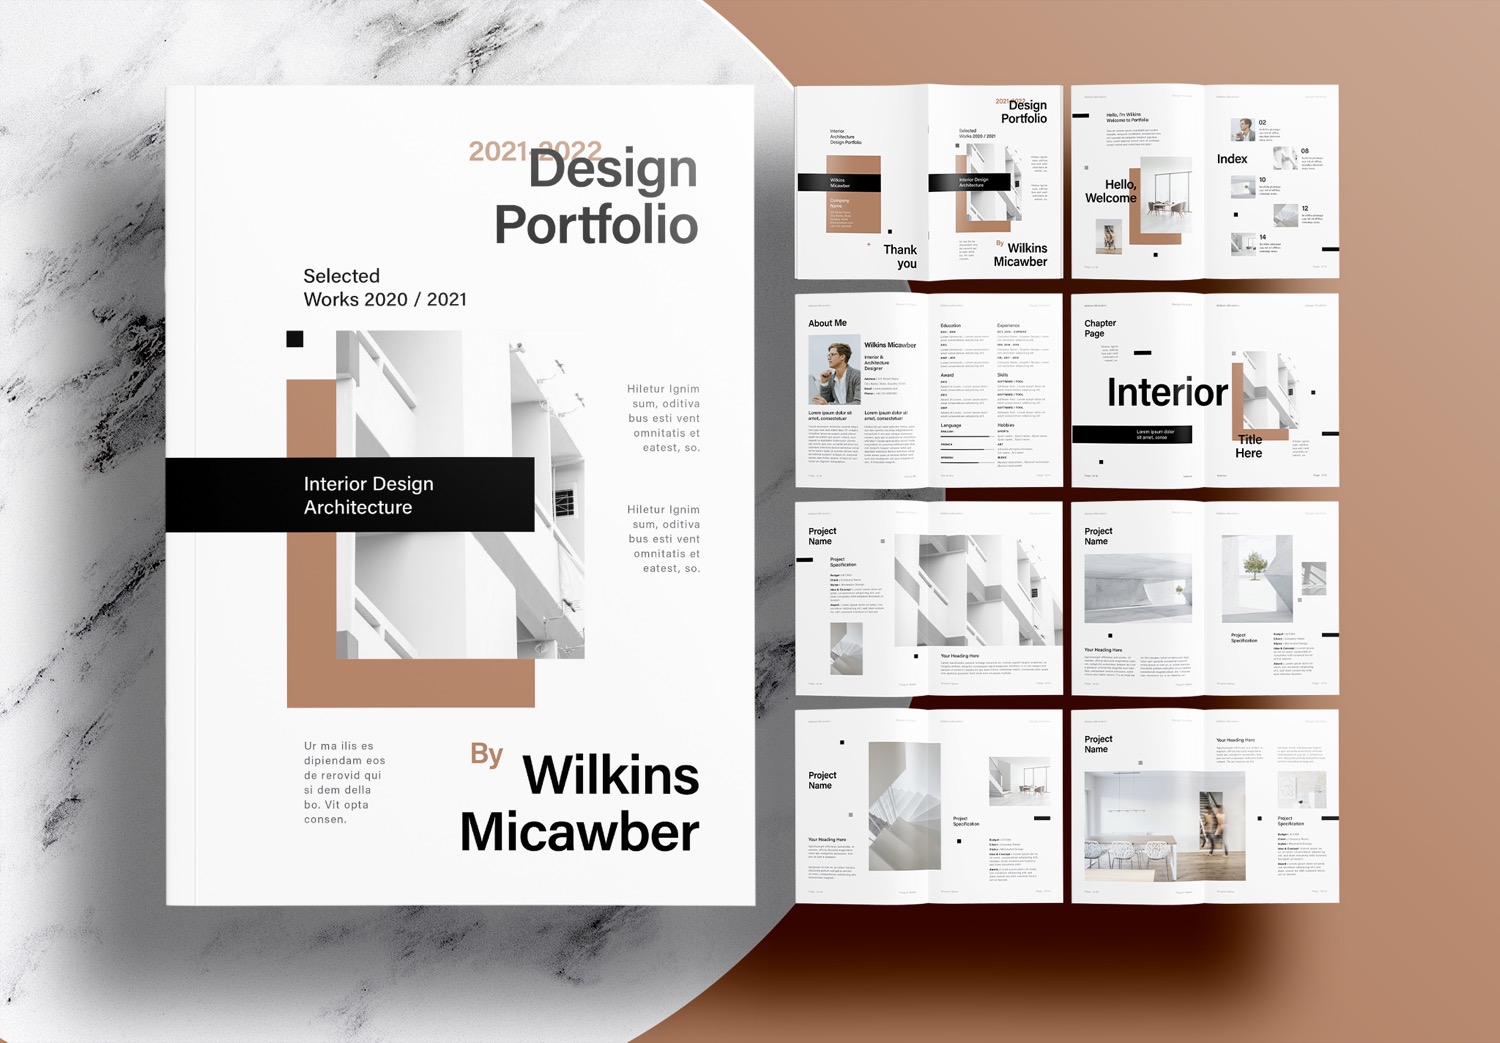 interior-design-portfolio-layout-home-design-ideas